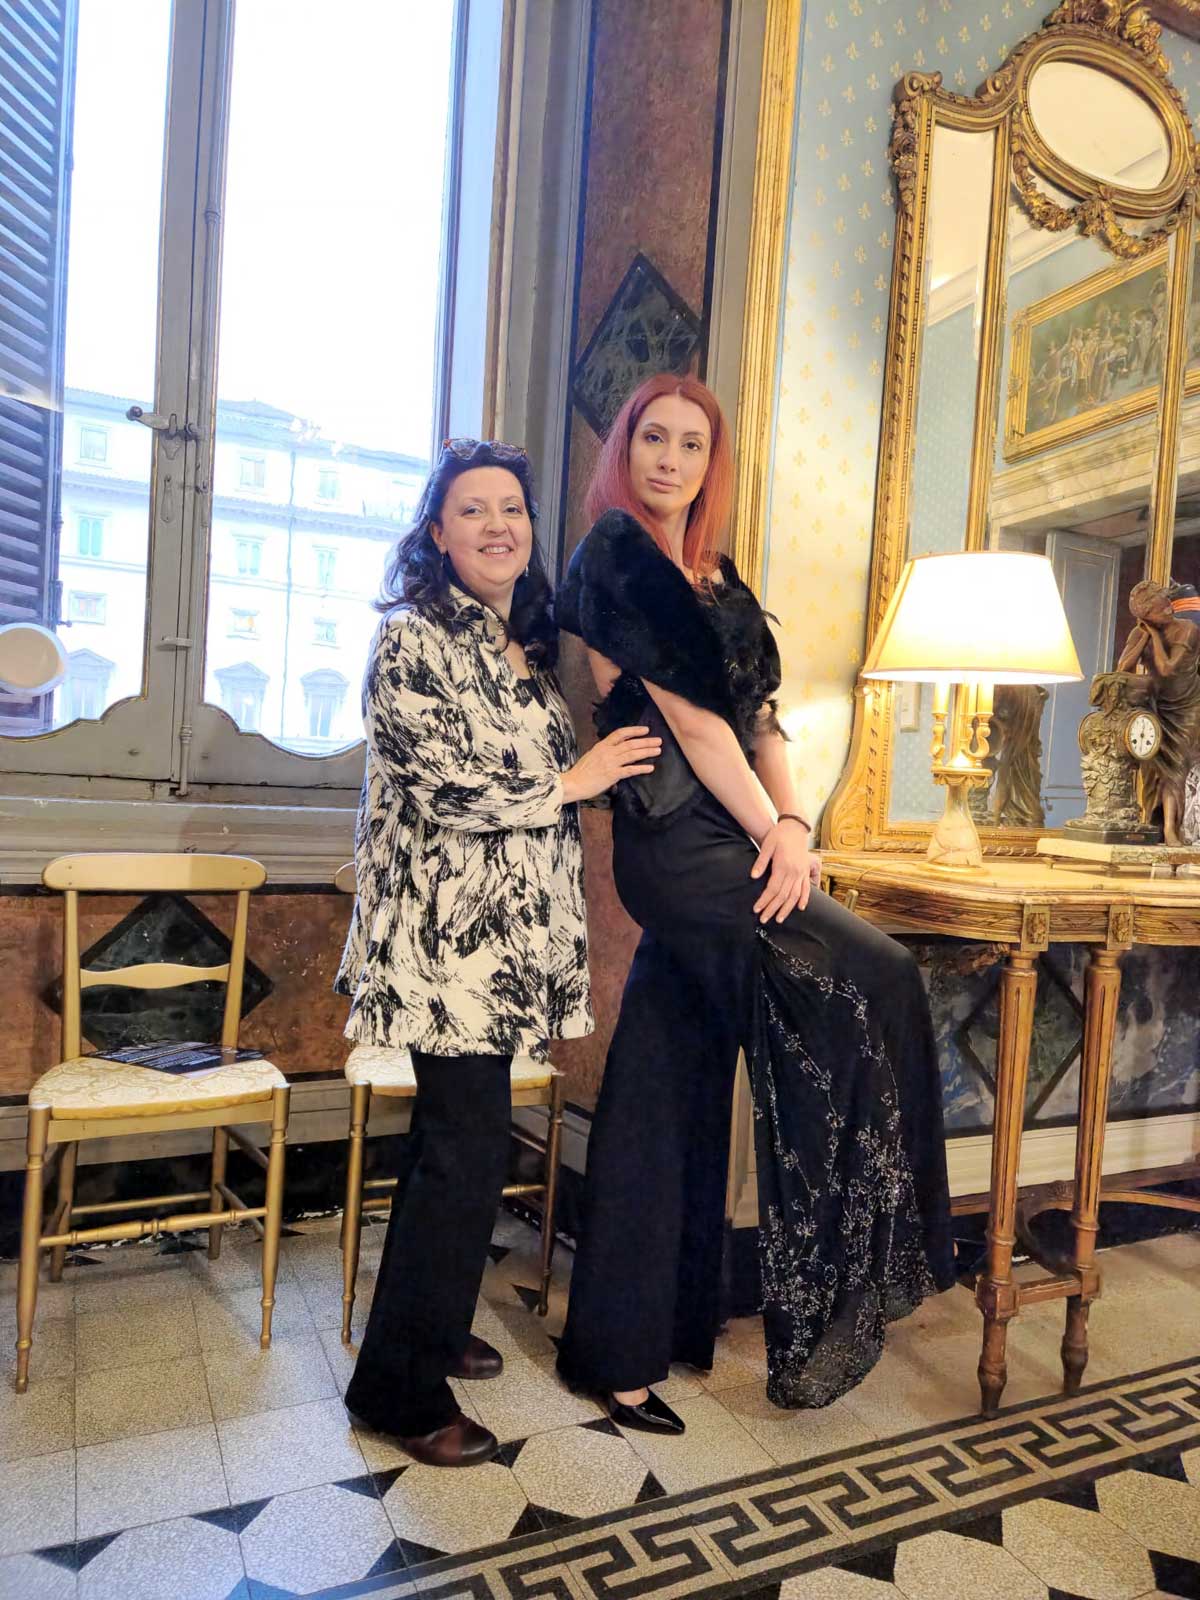 Mod’Art Roma - Il fascino dei colori - sfilata modelle nello storico Palazzo Ferrajoli - evento d’alta moda con gli eleganti abiti di Elins moda stilista con modella